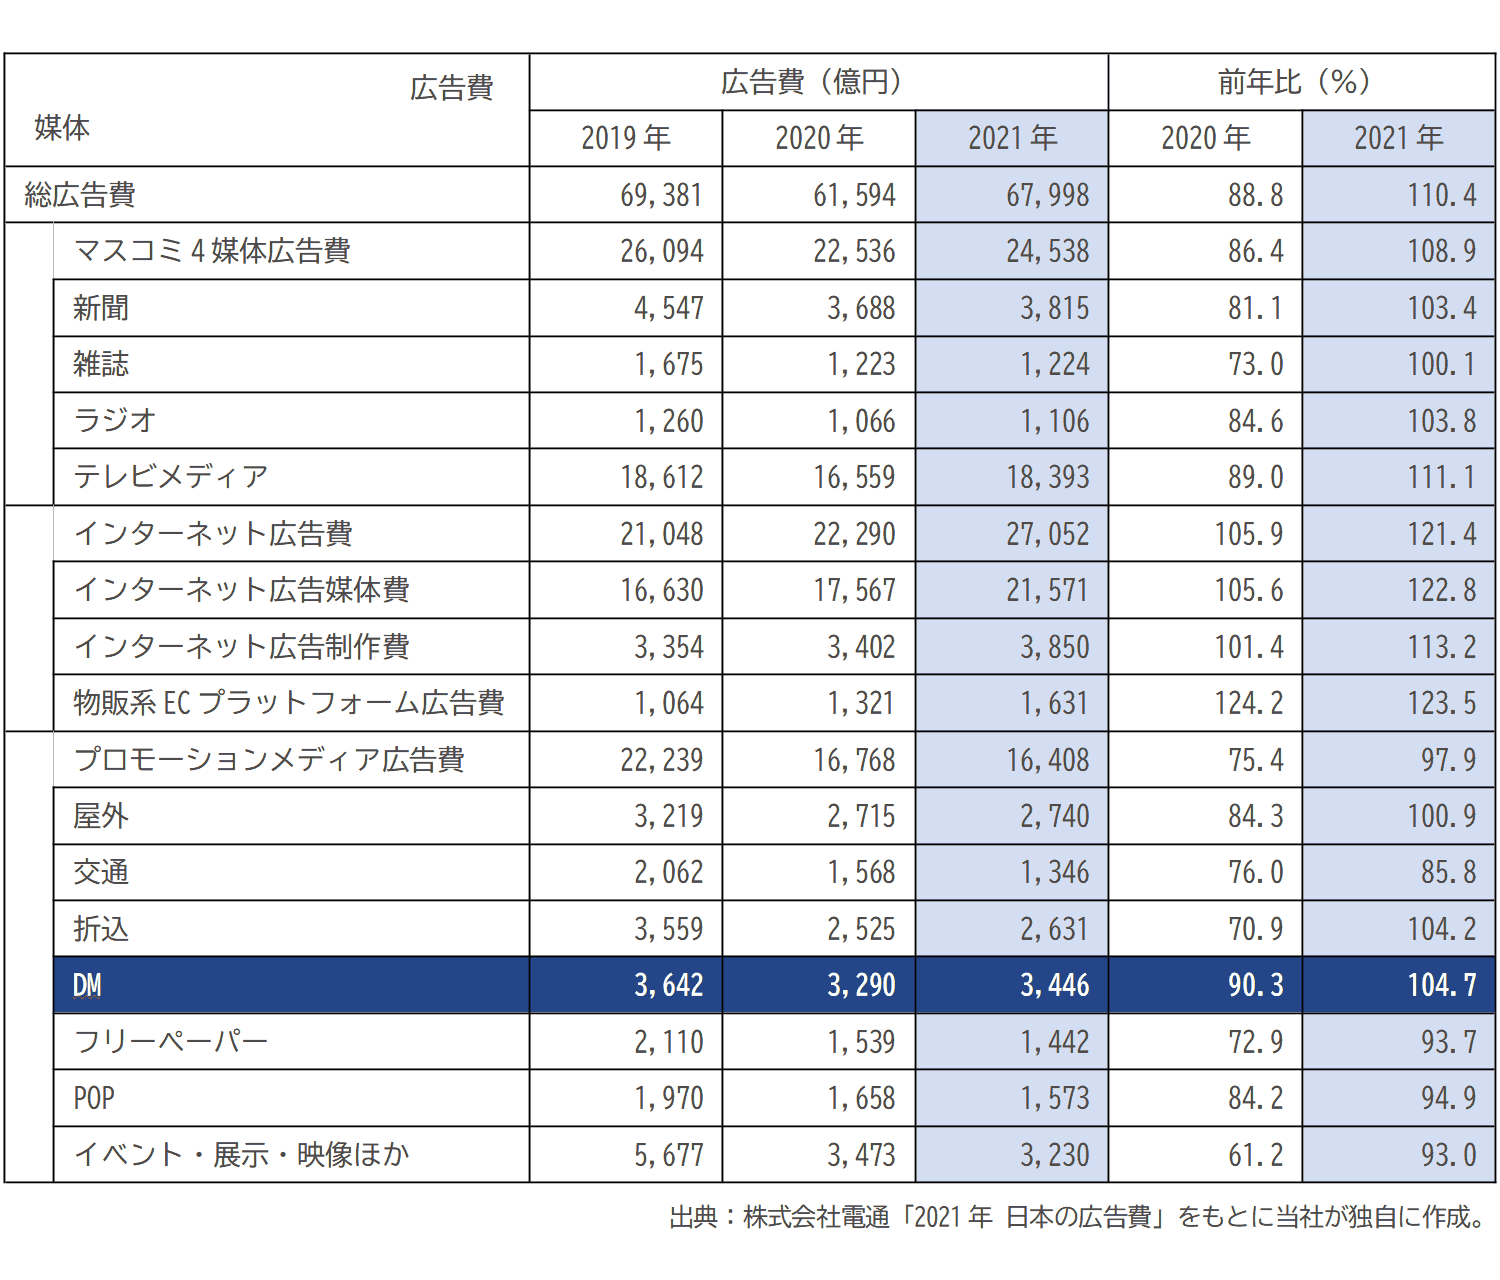 日本の総広告費表